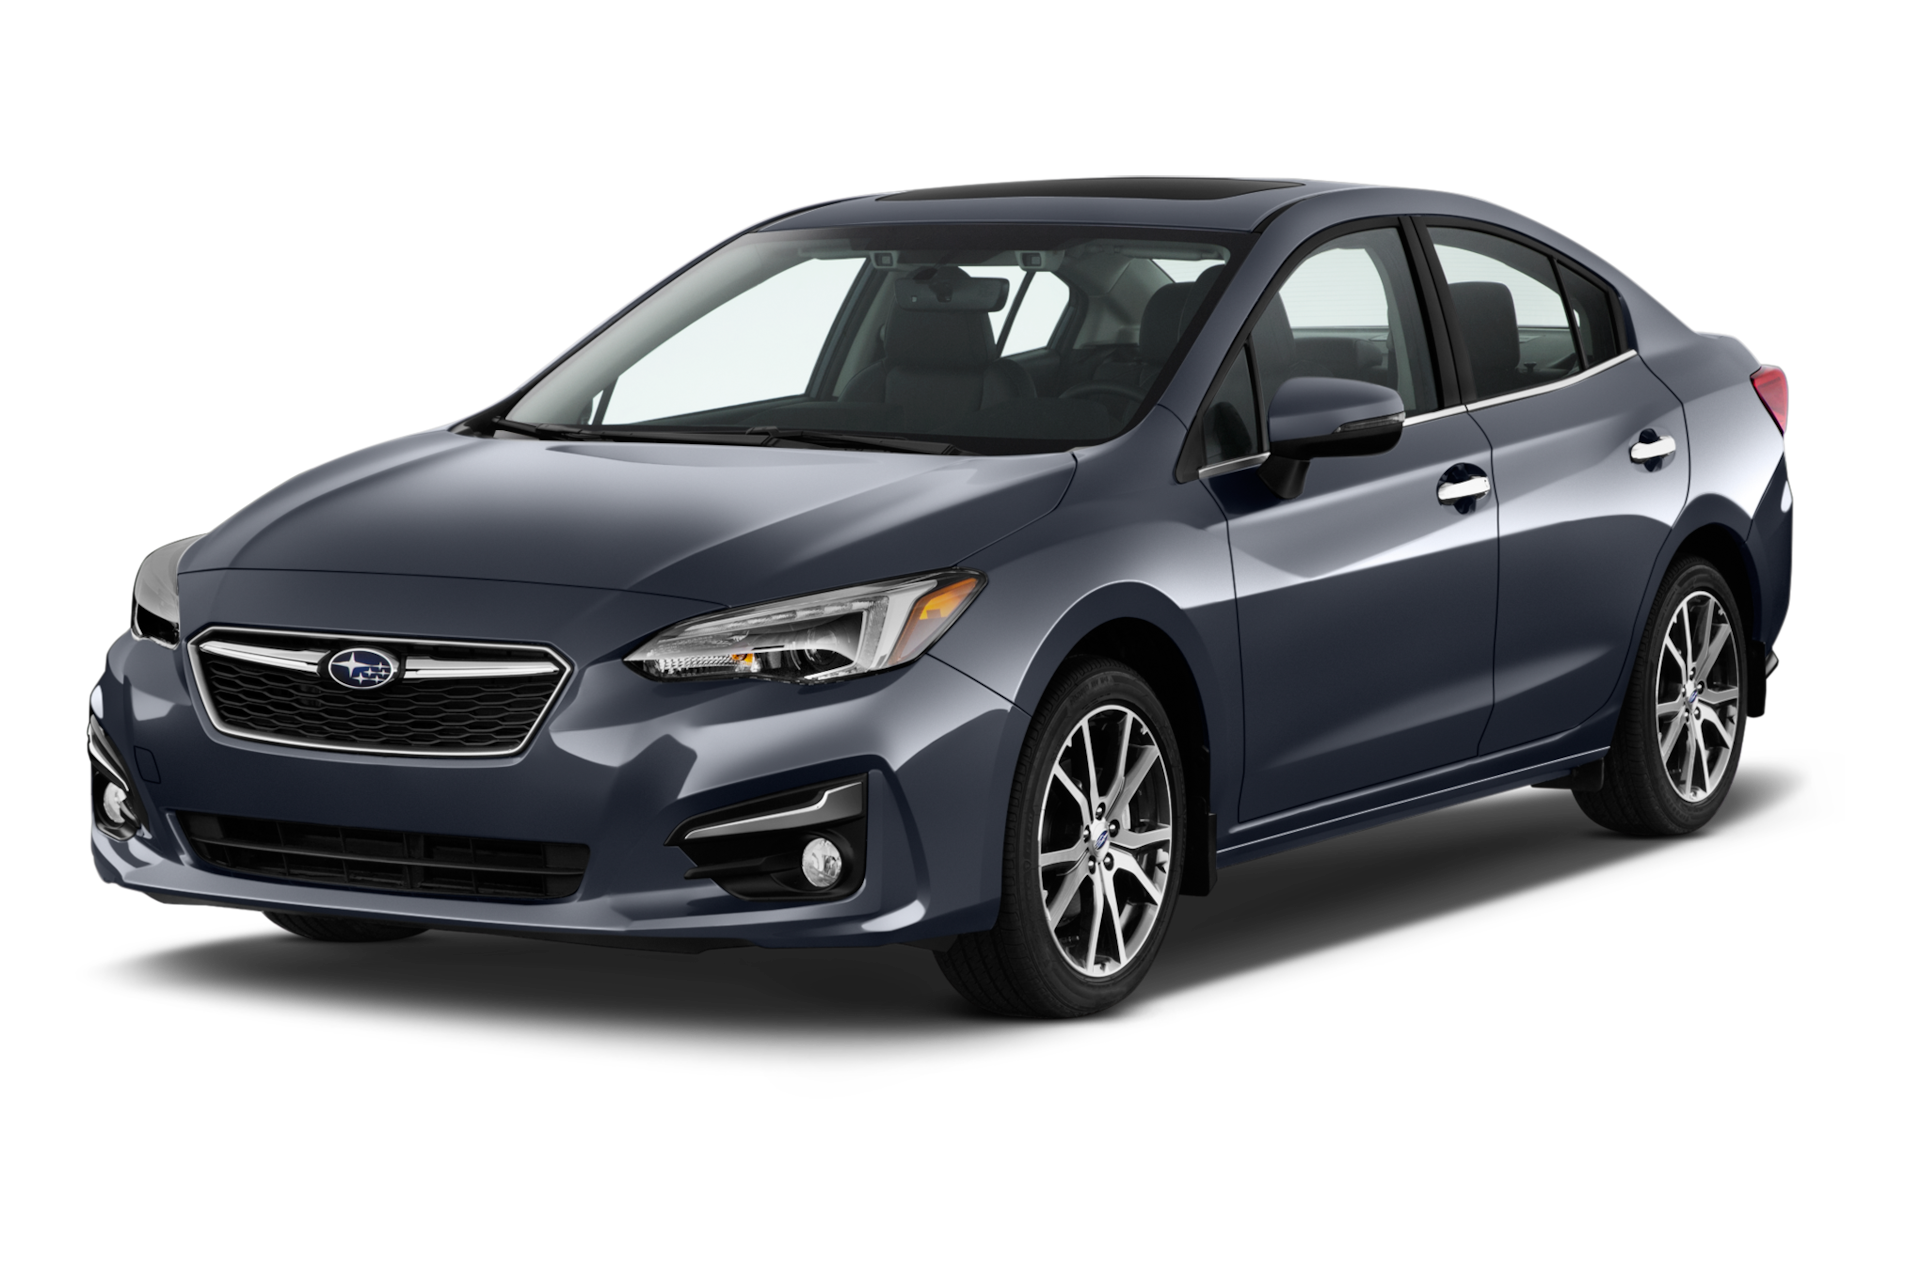 2017 Subaru Impreza Prices, Reviews, and Photos - MotorTrend